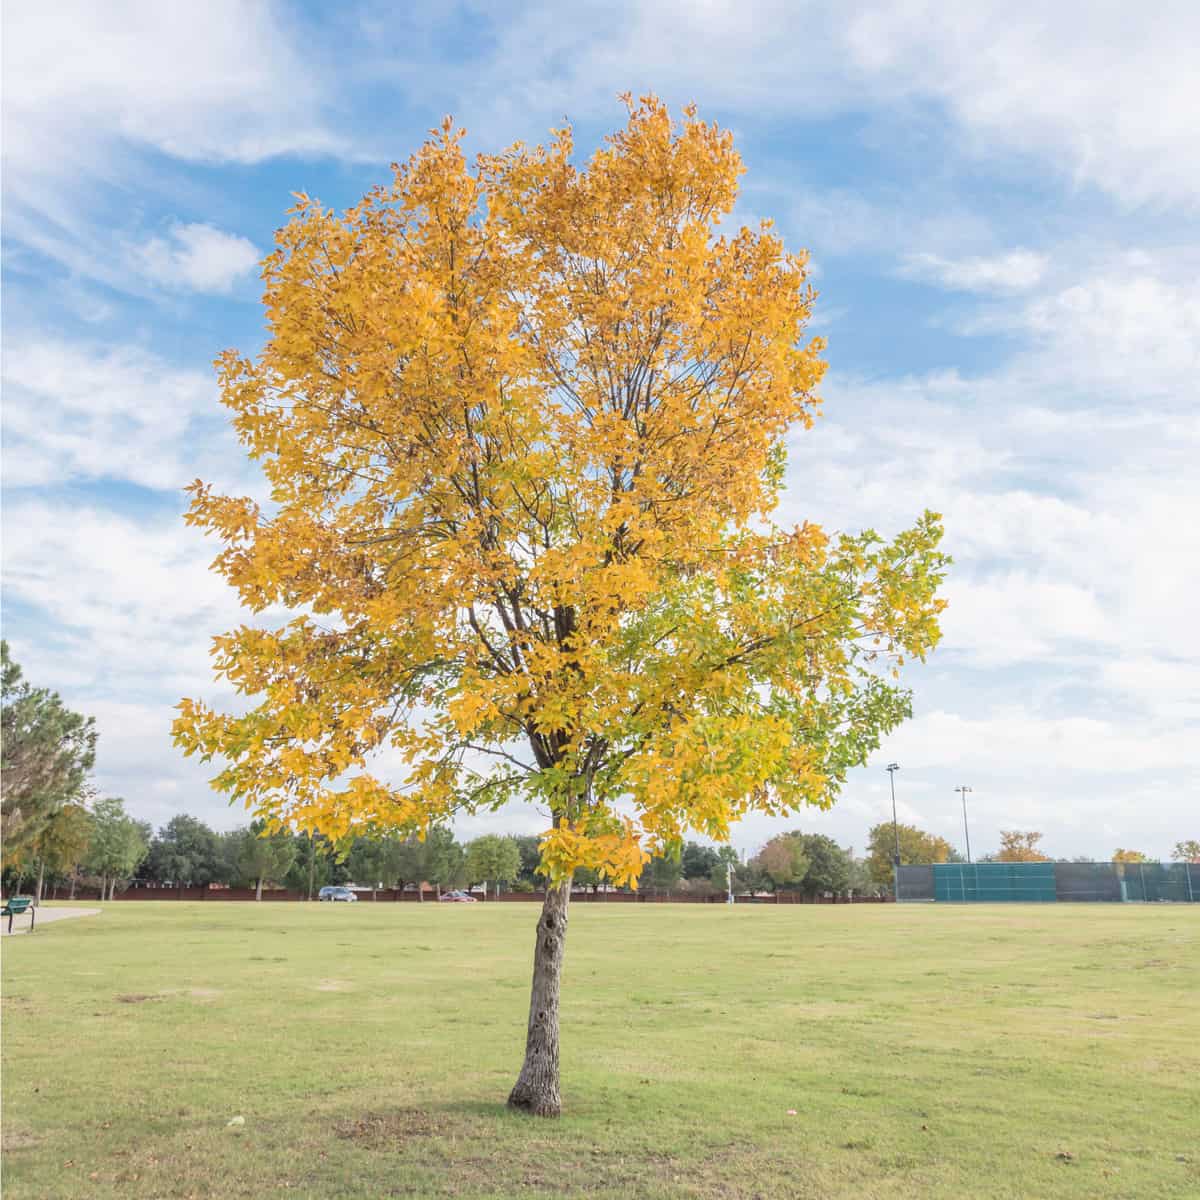 Beautiful Texas Cedar Elm tree in urban park in Fall season. Stunning yellow fall foliage color